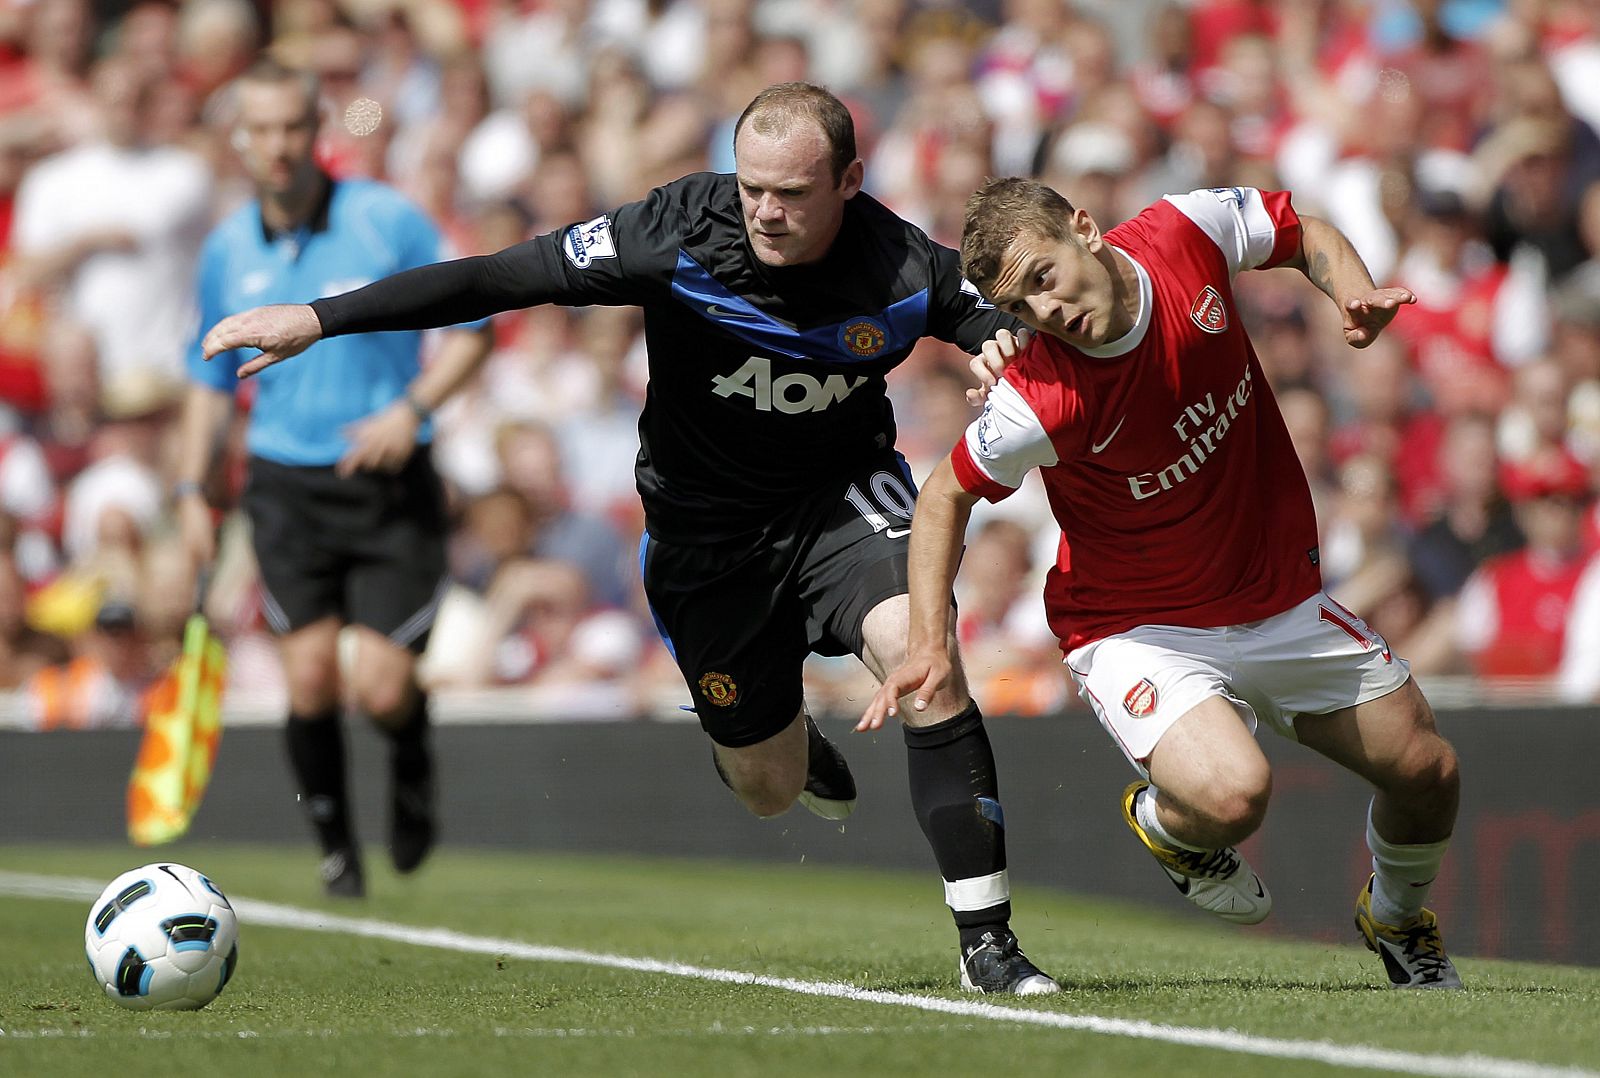 El jugador del Manchester United Wayne Rooney pelea por el control del balón con el jugador del Arsenal, Jack Wilshere.